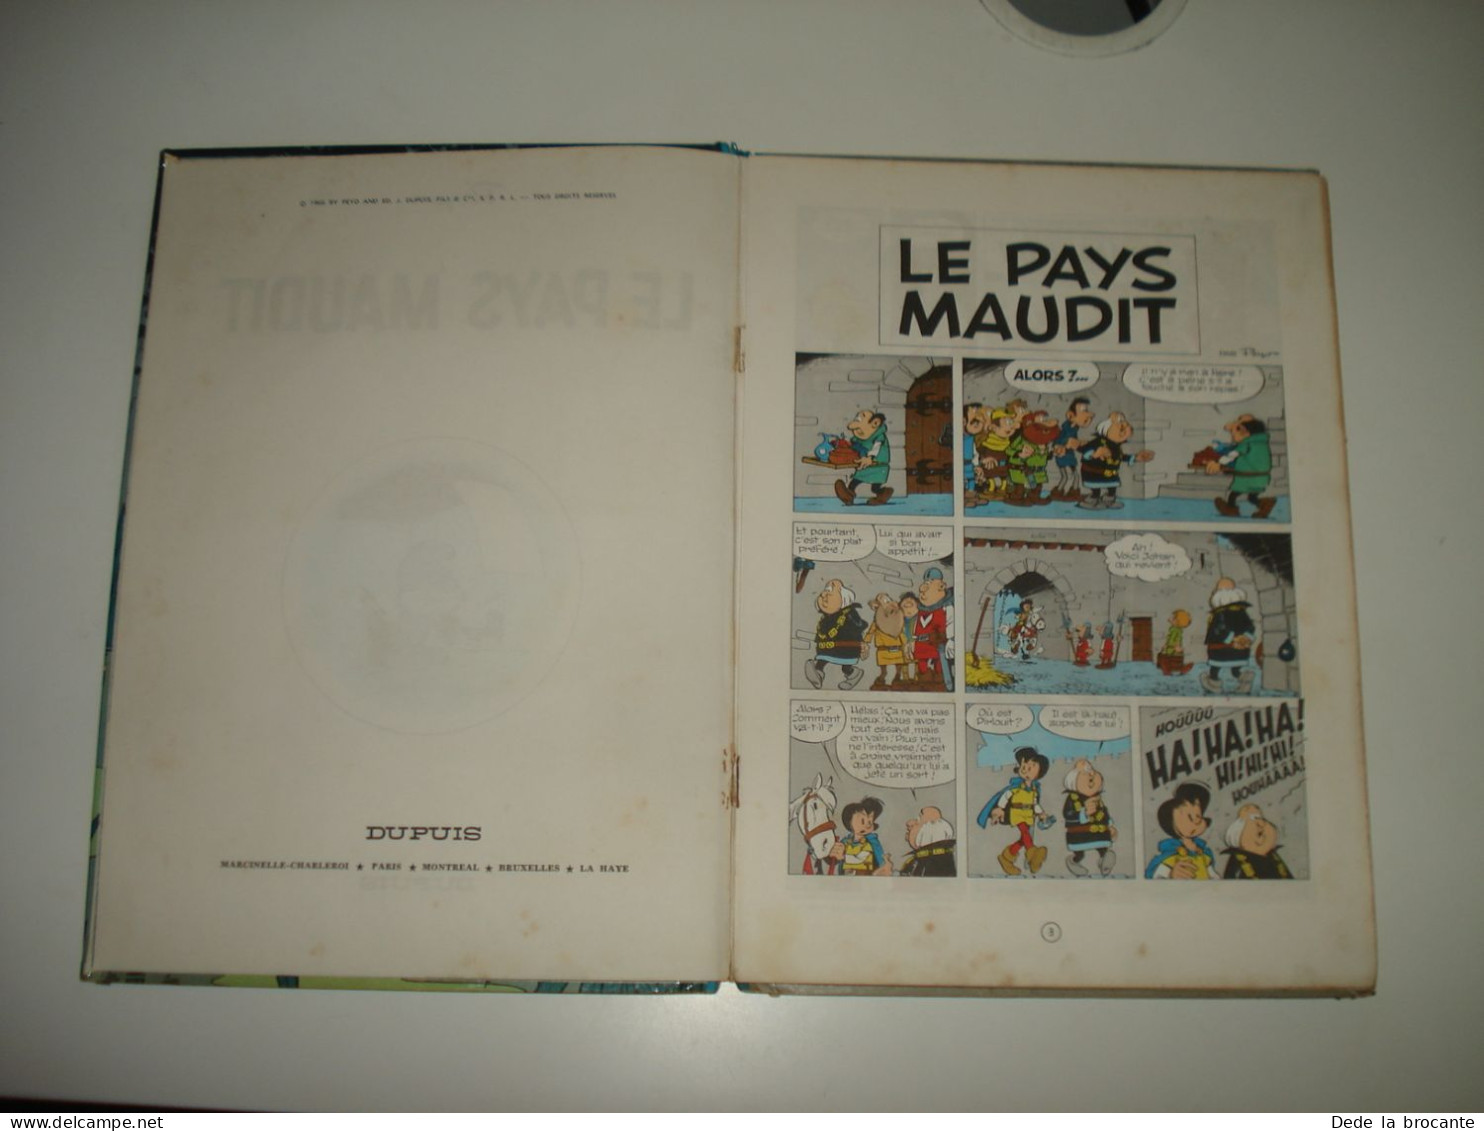 C47 (1) / Johan et Pirlouit N° 12 " Le pays maudit " - Peyo - Réédition de 1966